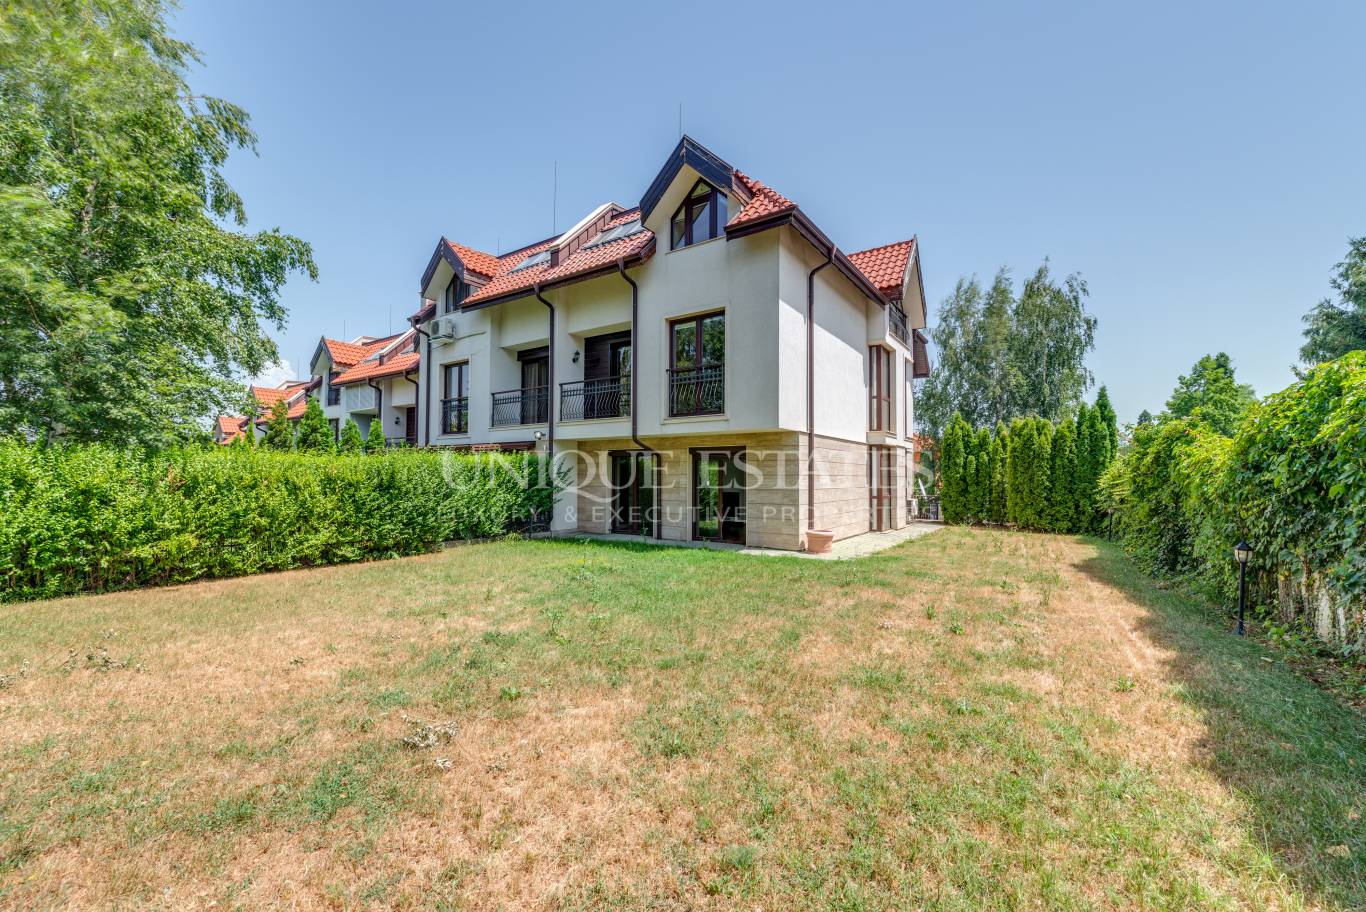 Къща под наем в София, Симеоново - код на имота: N17666 - image 2